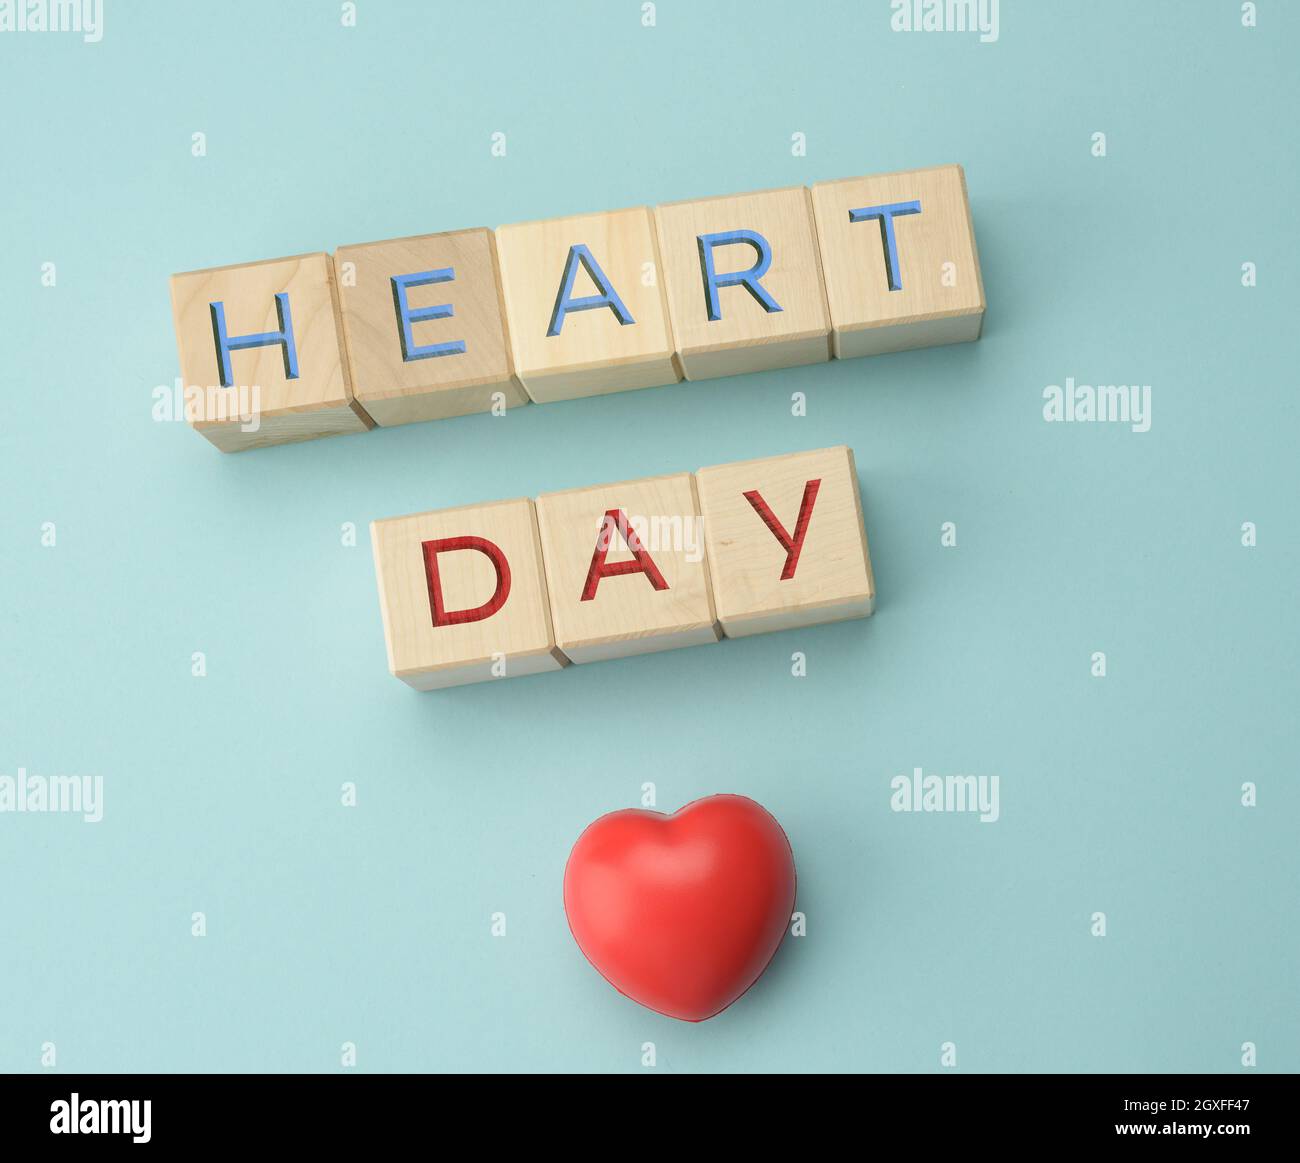 blocs en bois avec inscription Heart Day sur fond bleu. Concept de soins de santé, contrôle annuel des organes humains, prévention des maladies Banque D'Images